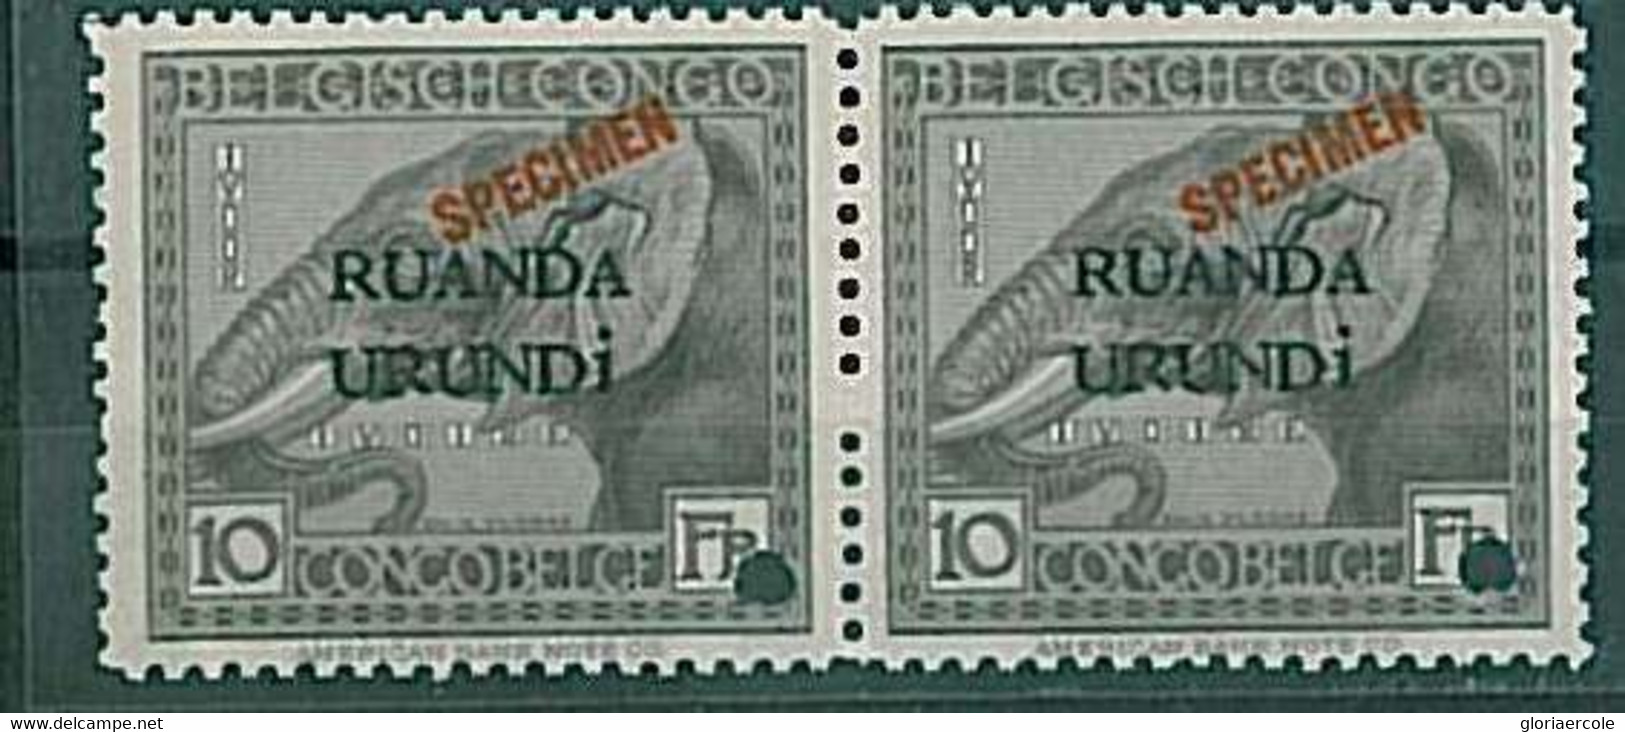 20568 - RUANDA URUNDI - STAMPS : Pair Of SPECIMEN Stamps - ANIMALS: ELEPHANT - Nuevos